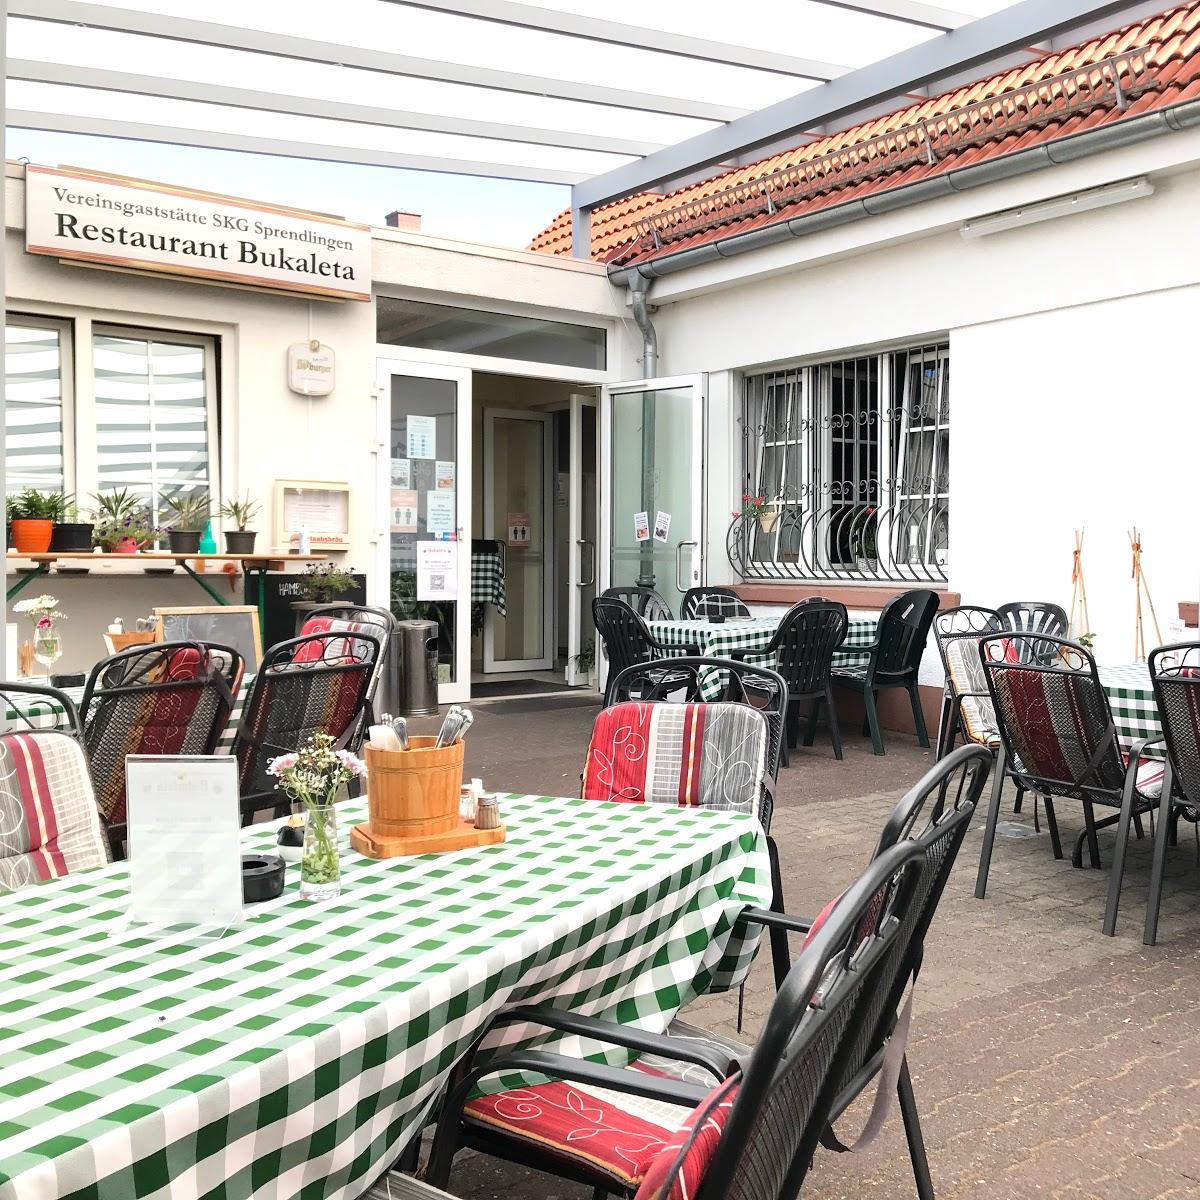 Restaurant "SKG Sprendlingen Vereinsgaststätte Bukaleta" in Dreieich